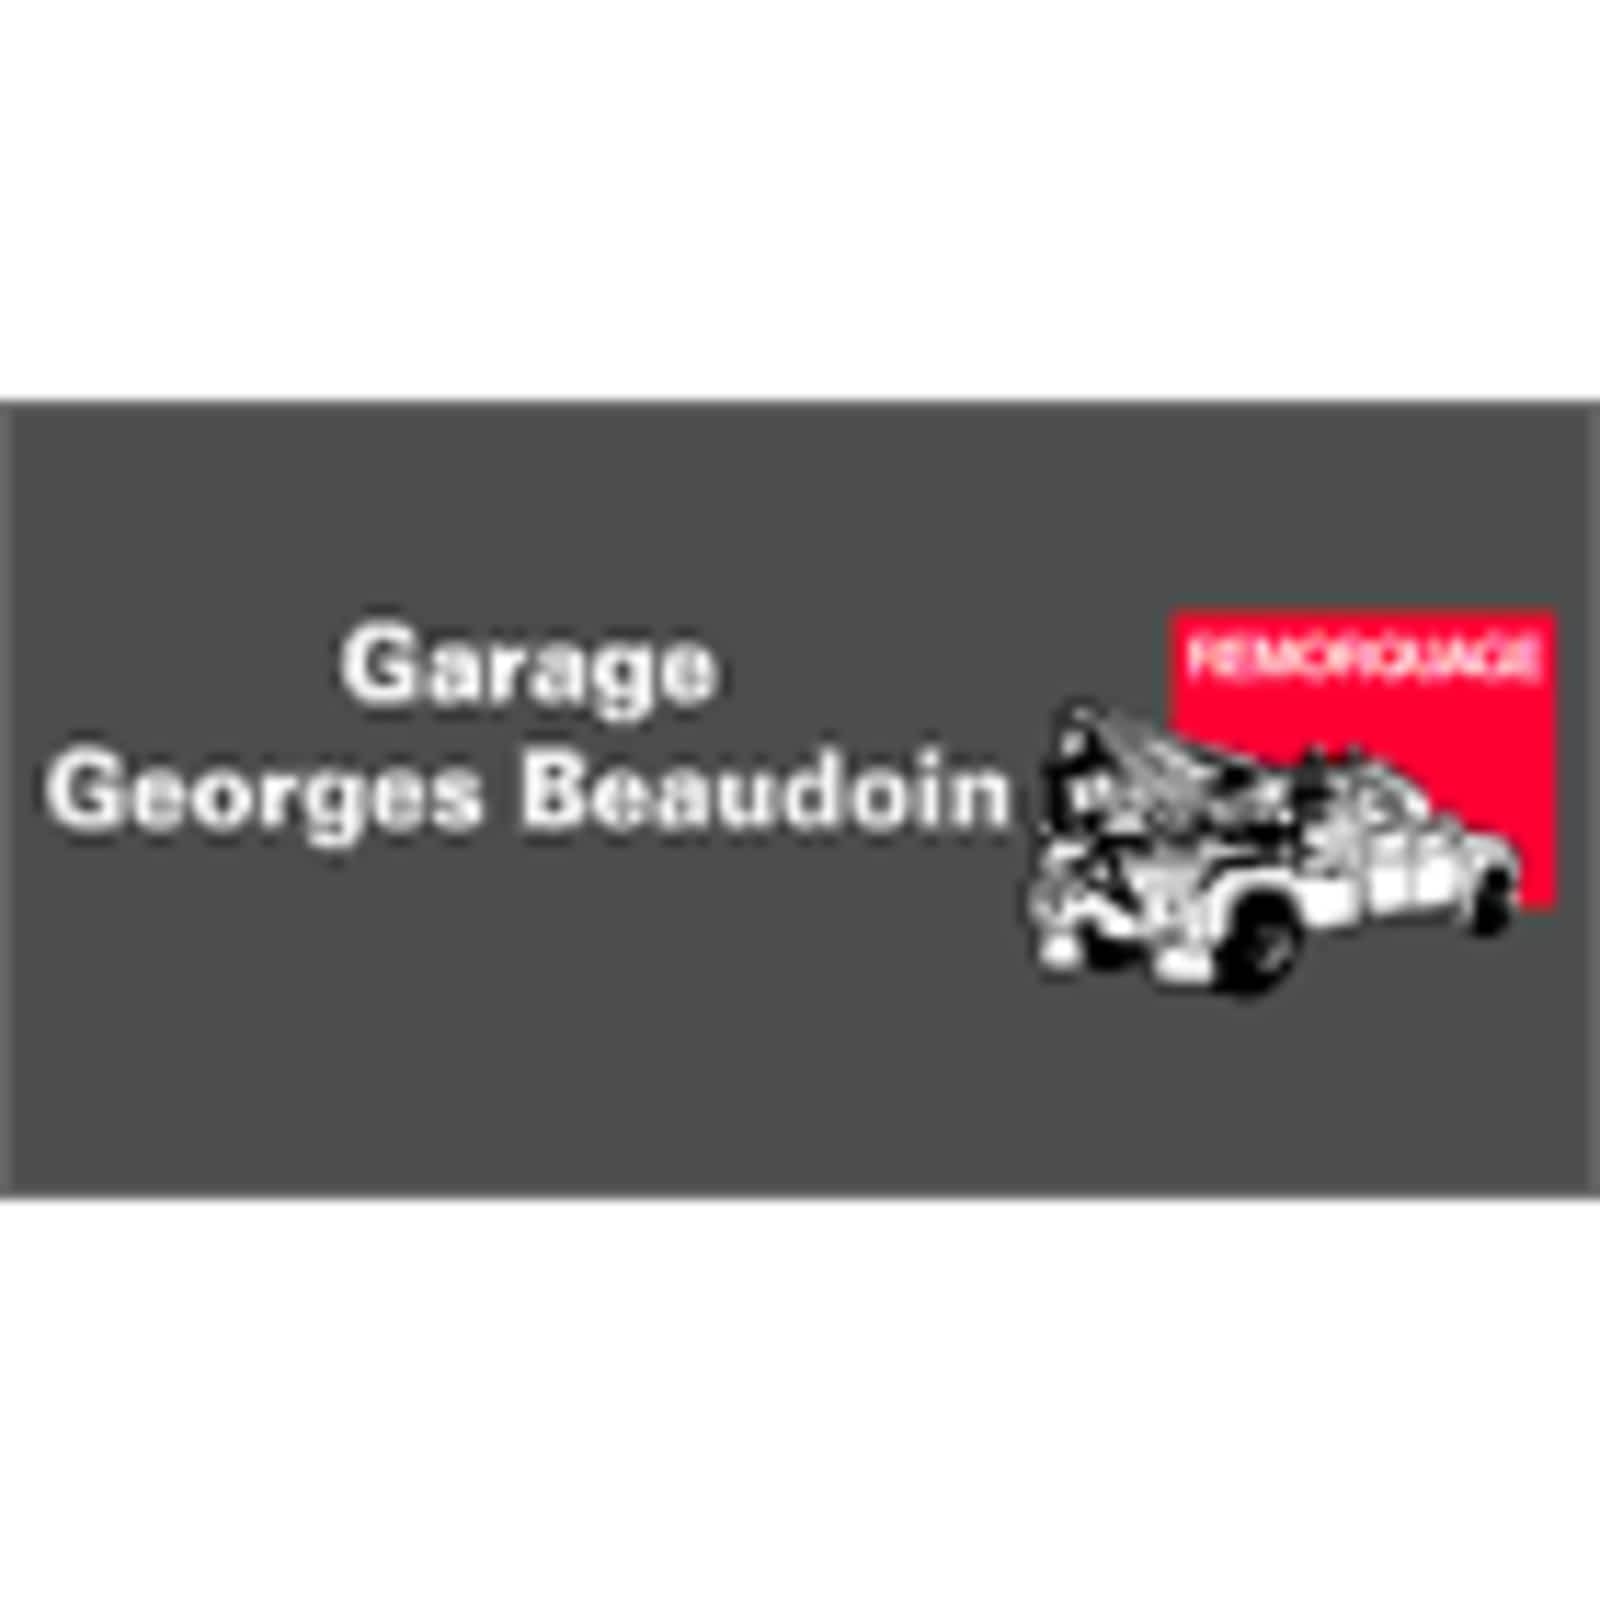 Garage Georges Beaudoin Inc 1191 Rte 169, Saint-Félicien Quebec G8K 1L2